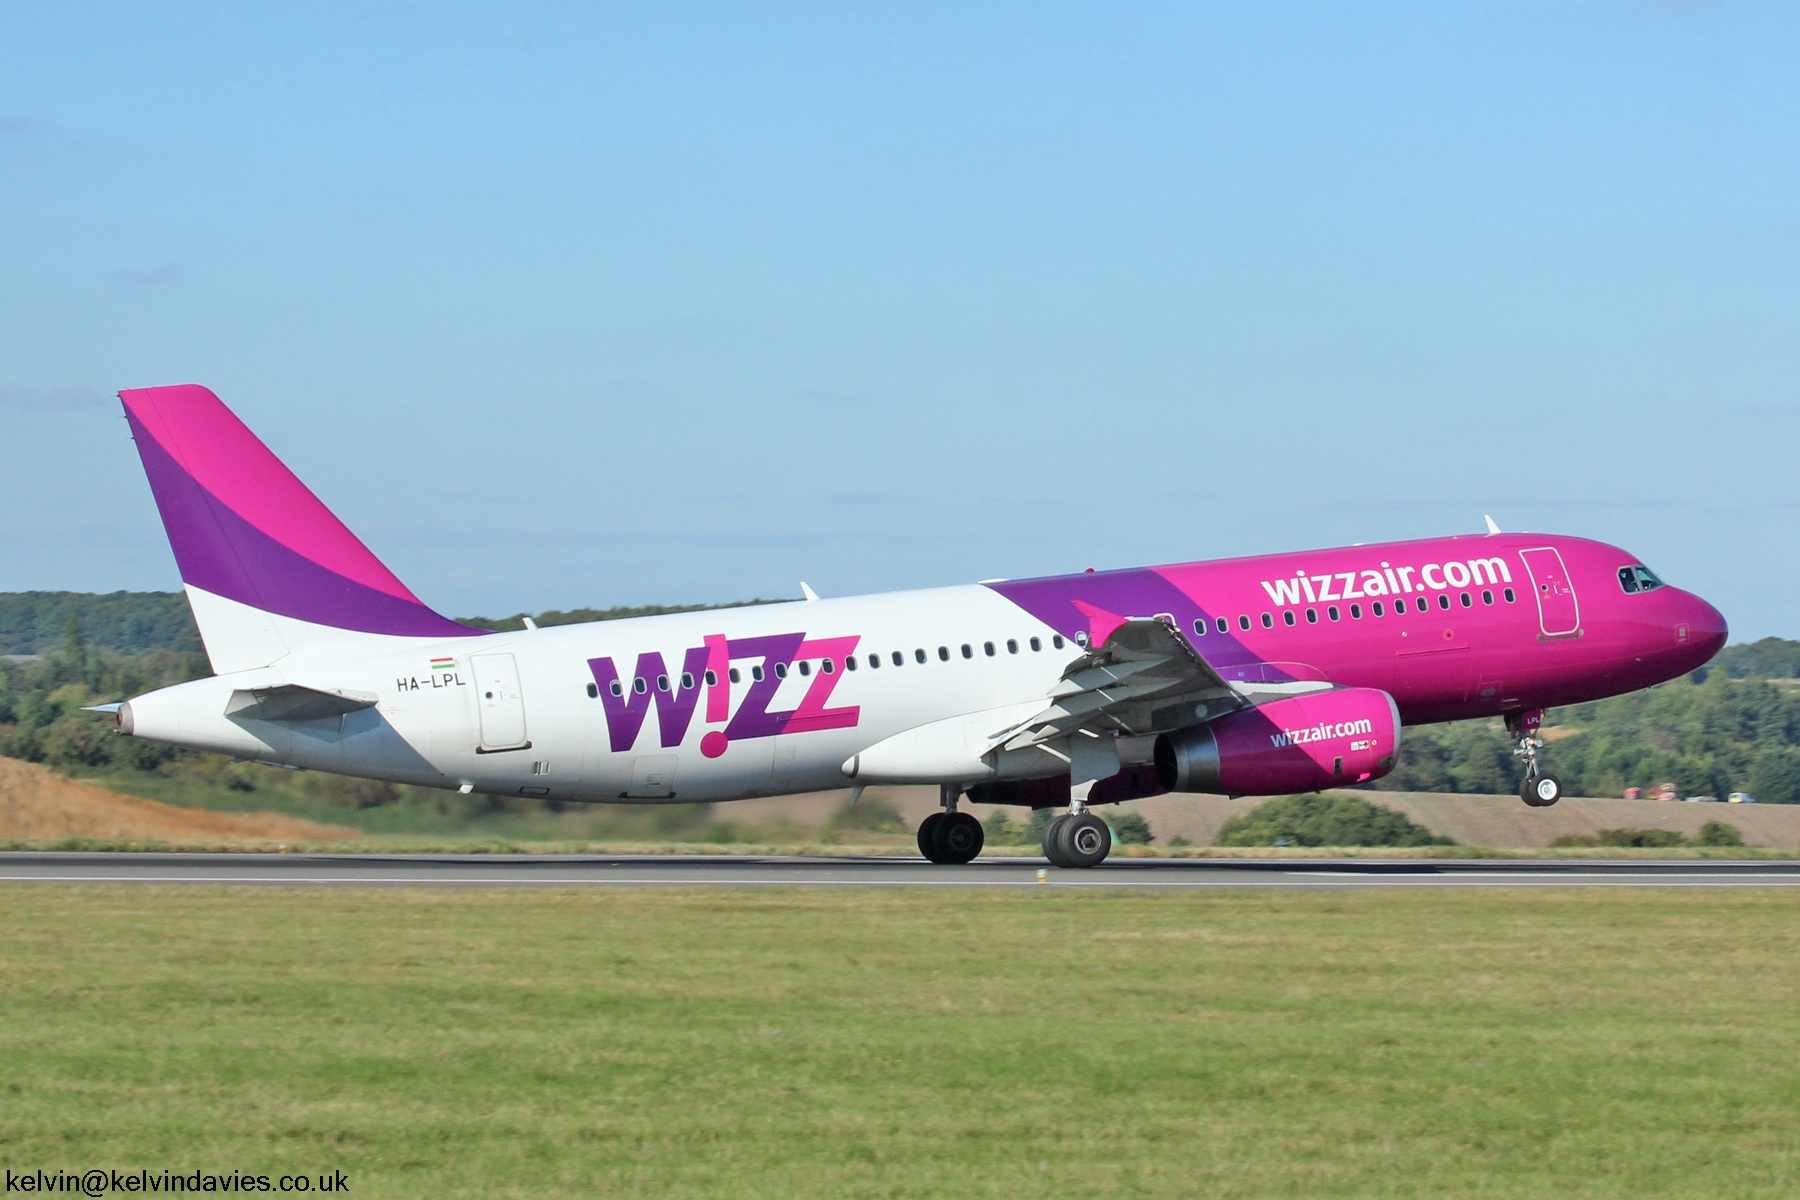 Wizz Air A320 HA-LPL